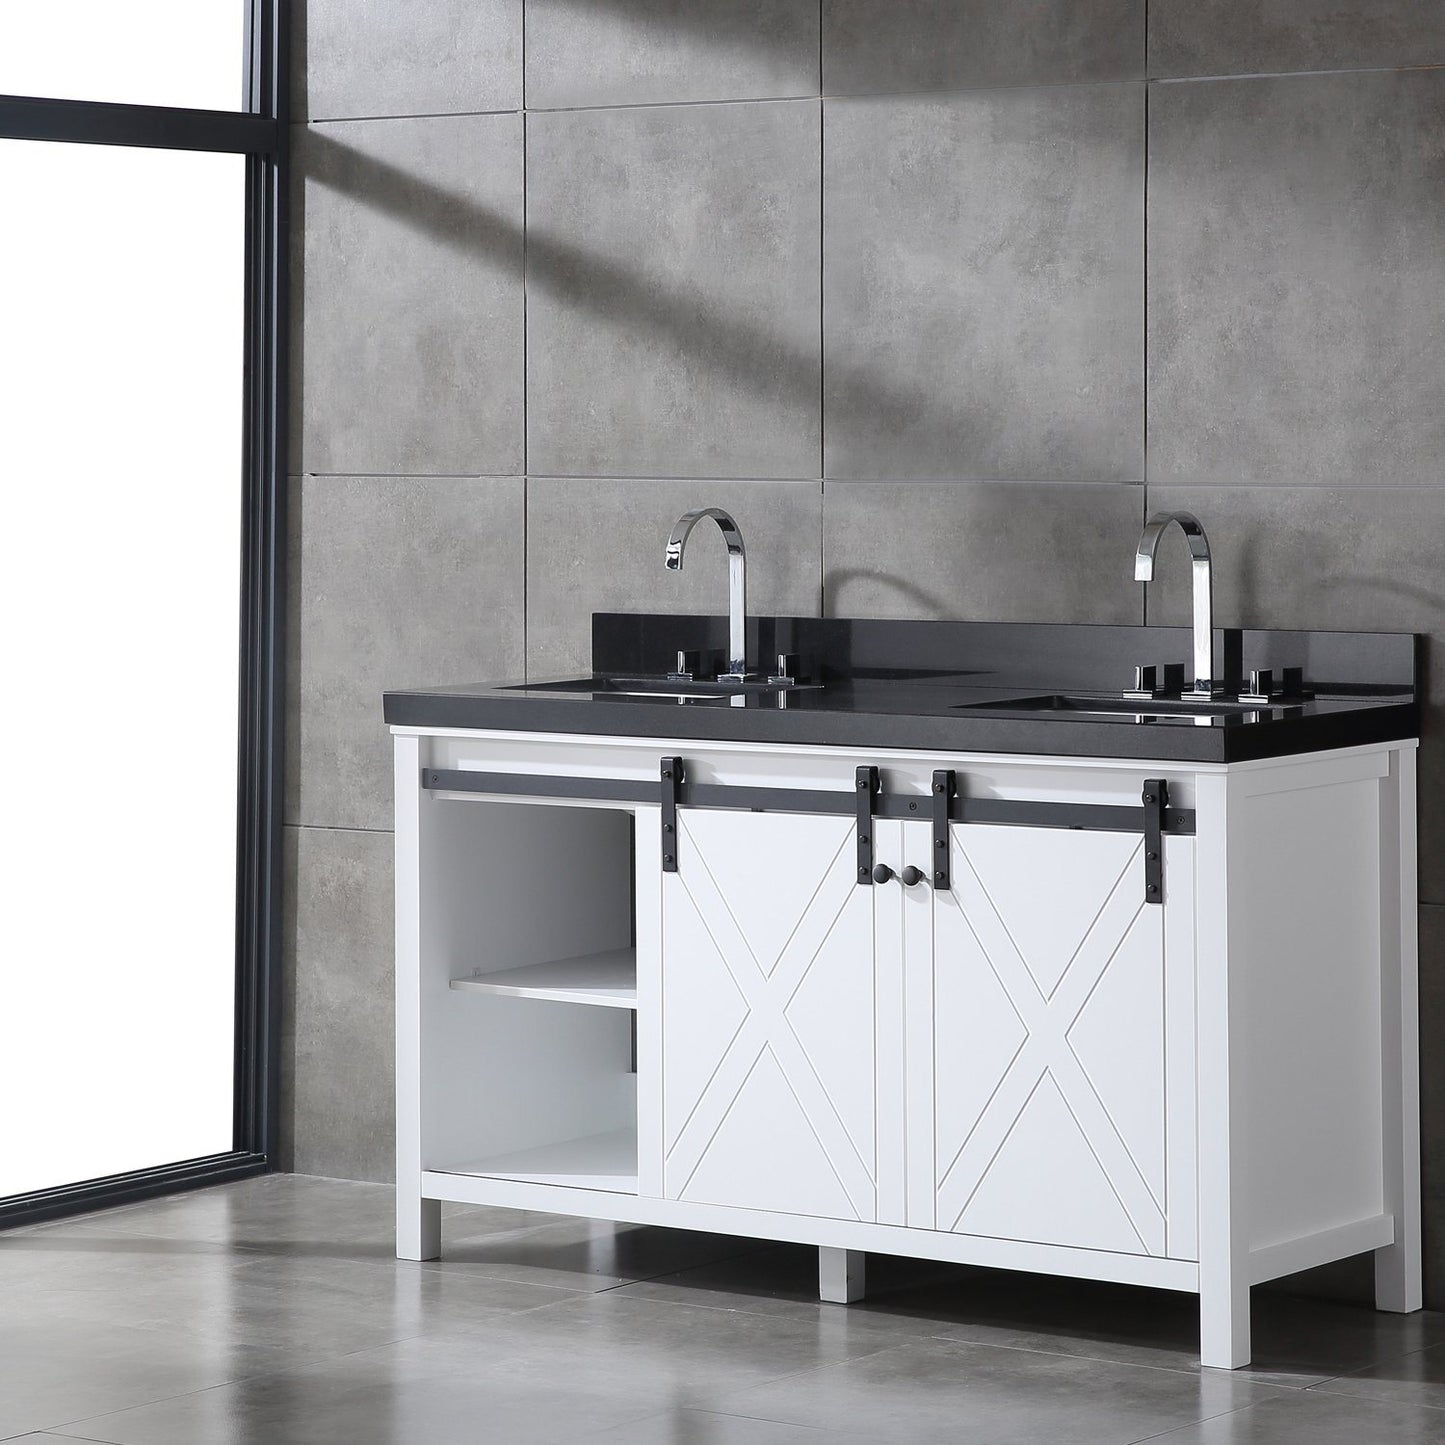 Eviva Dallas 60 in. White Bathroom Vanity with Absolute Black Granite Countertop - Luxe Bathroom Vanities Luxury Bathroom Fixtures Bathroom Furniture